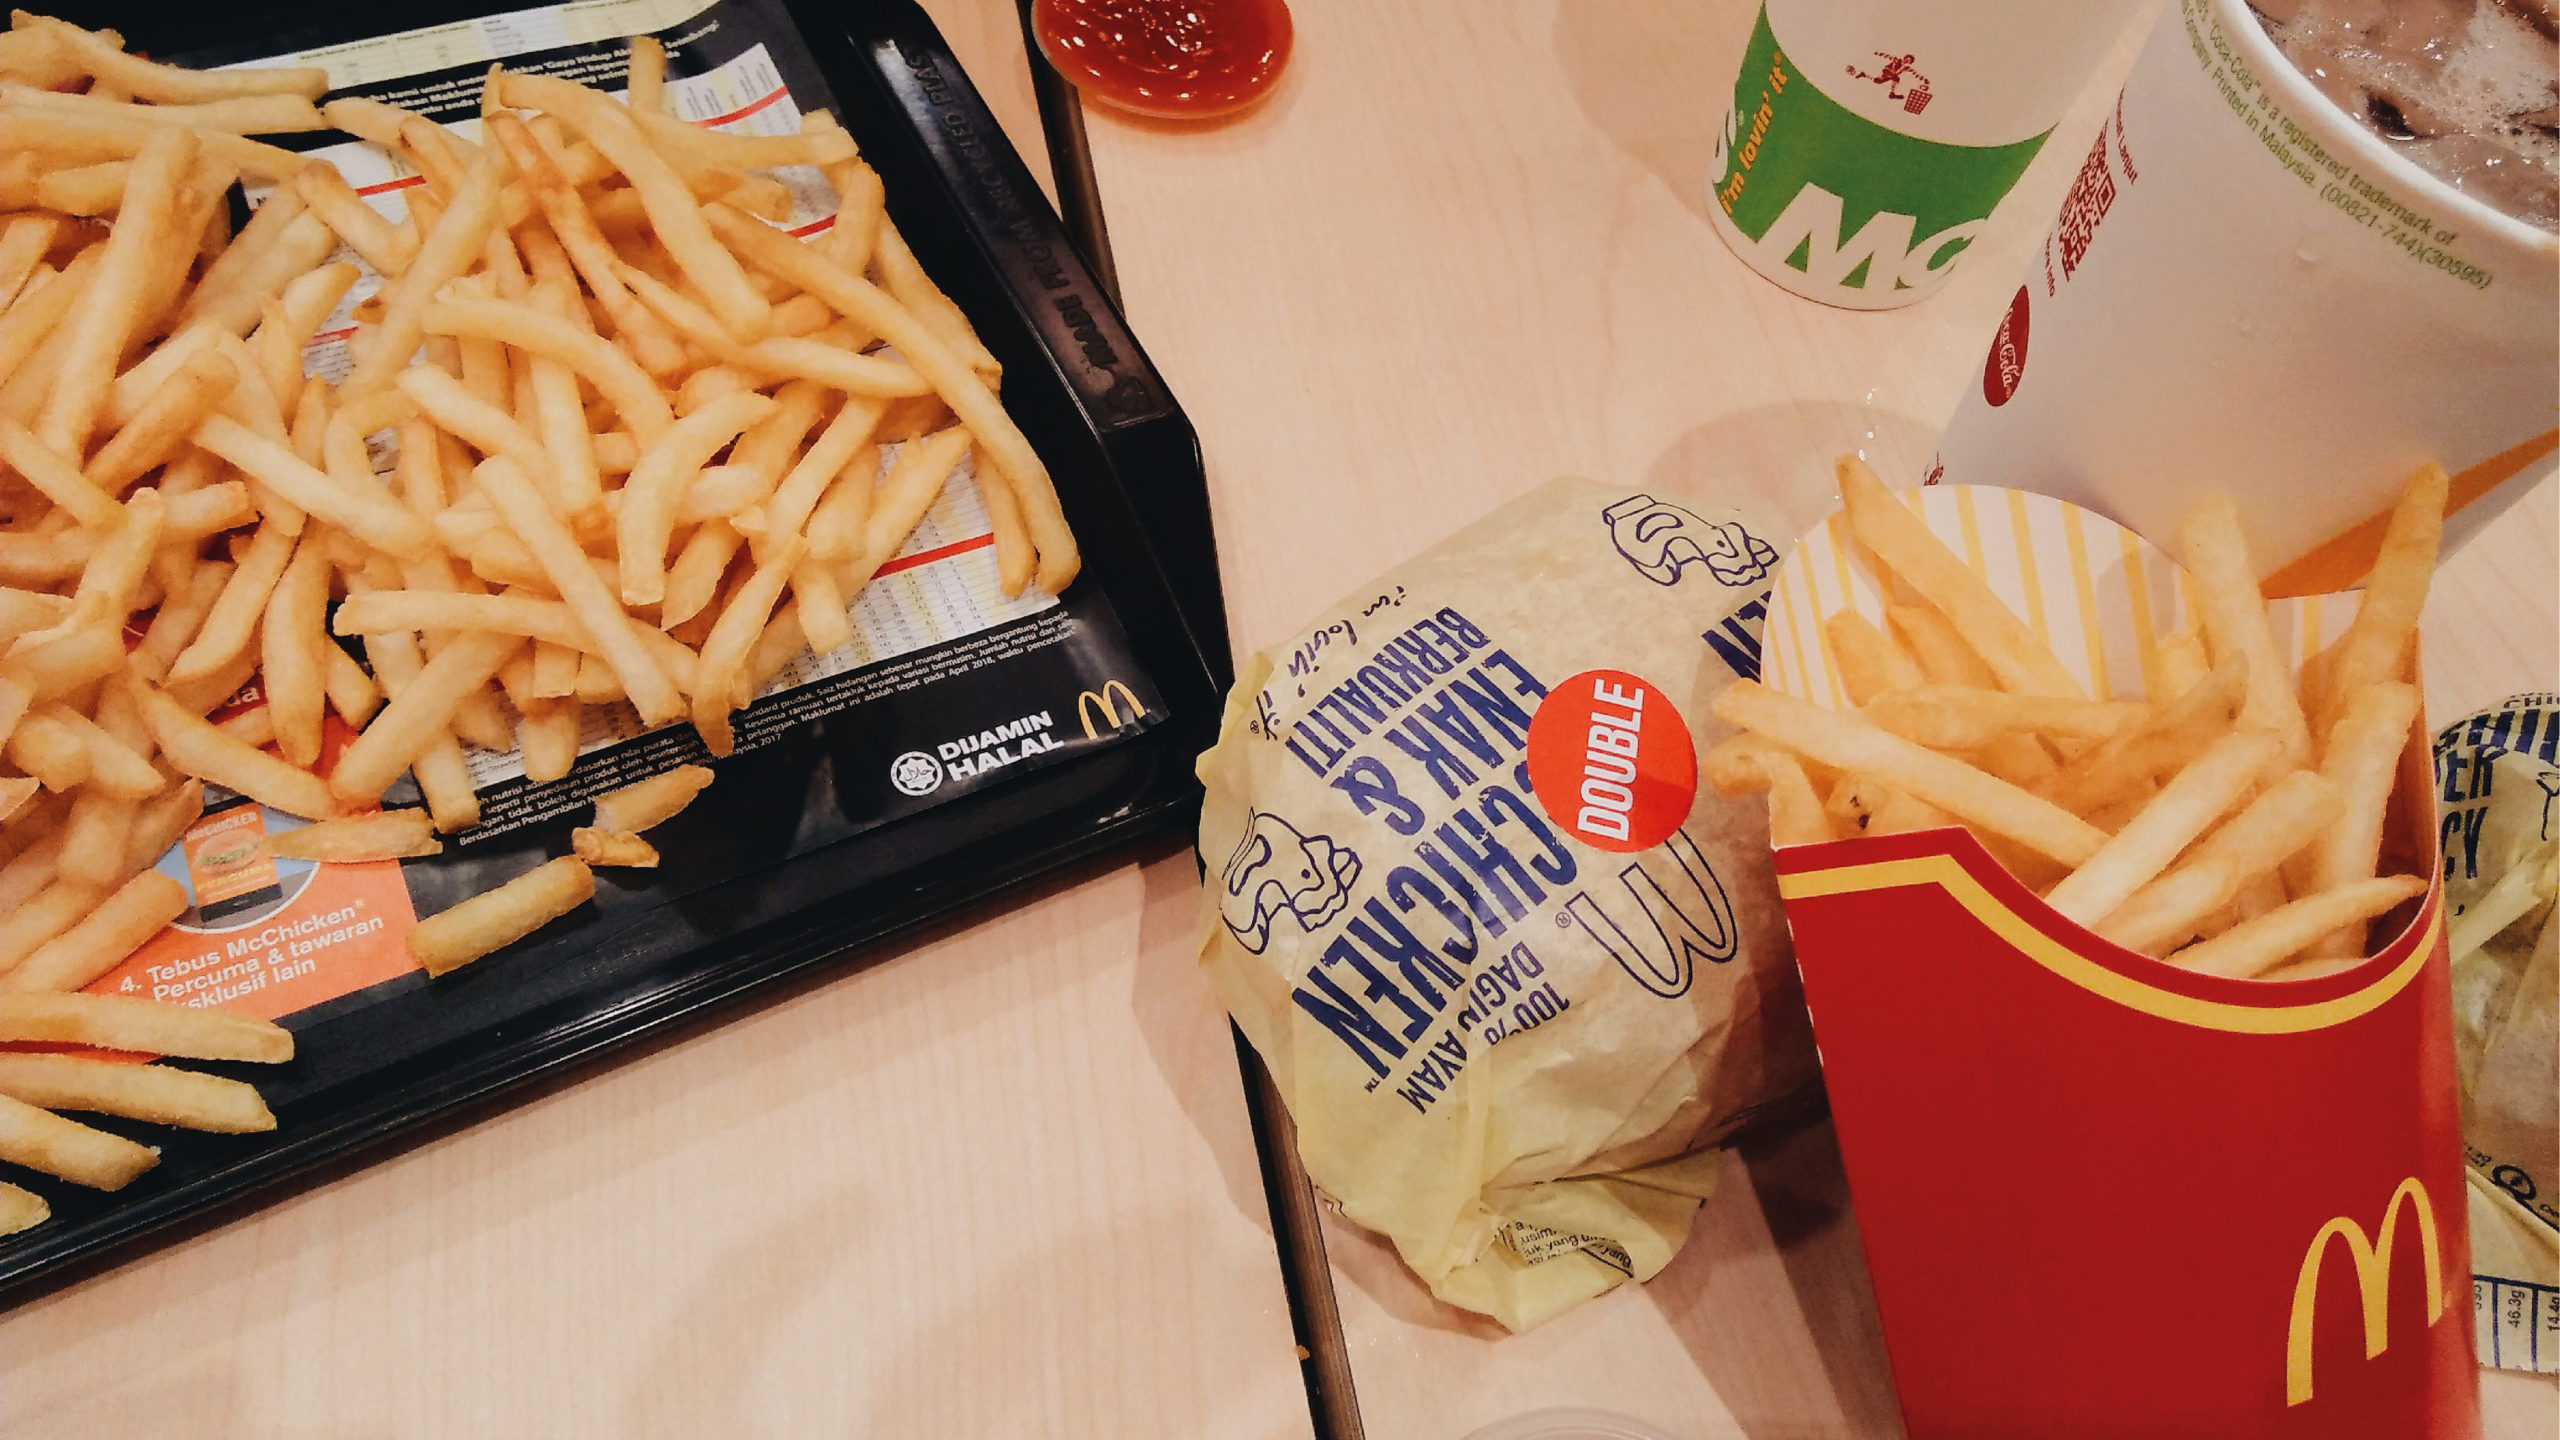 McDonald’s reduce tamaño de sus papas fritas en Japón por problemas de envío